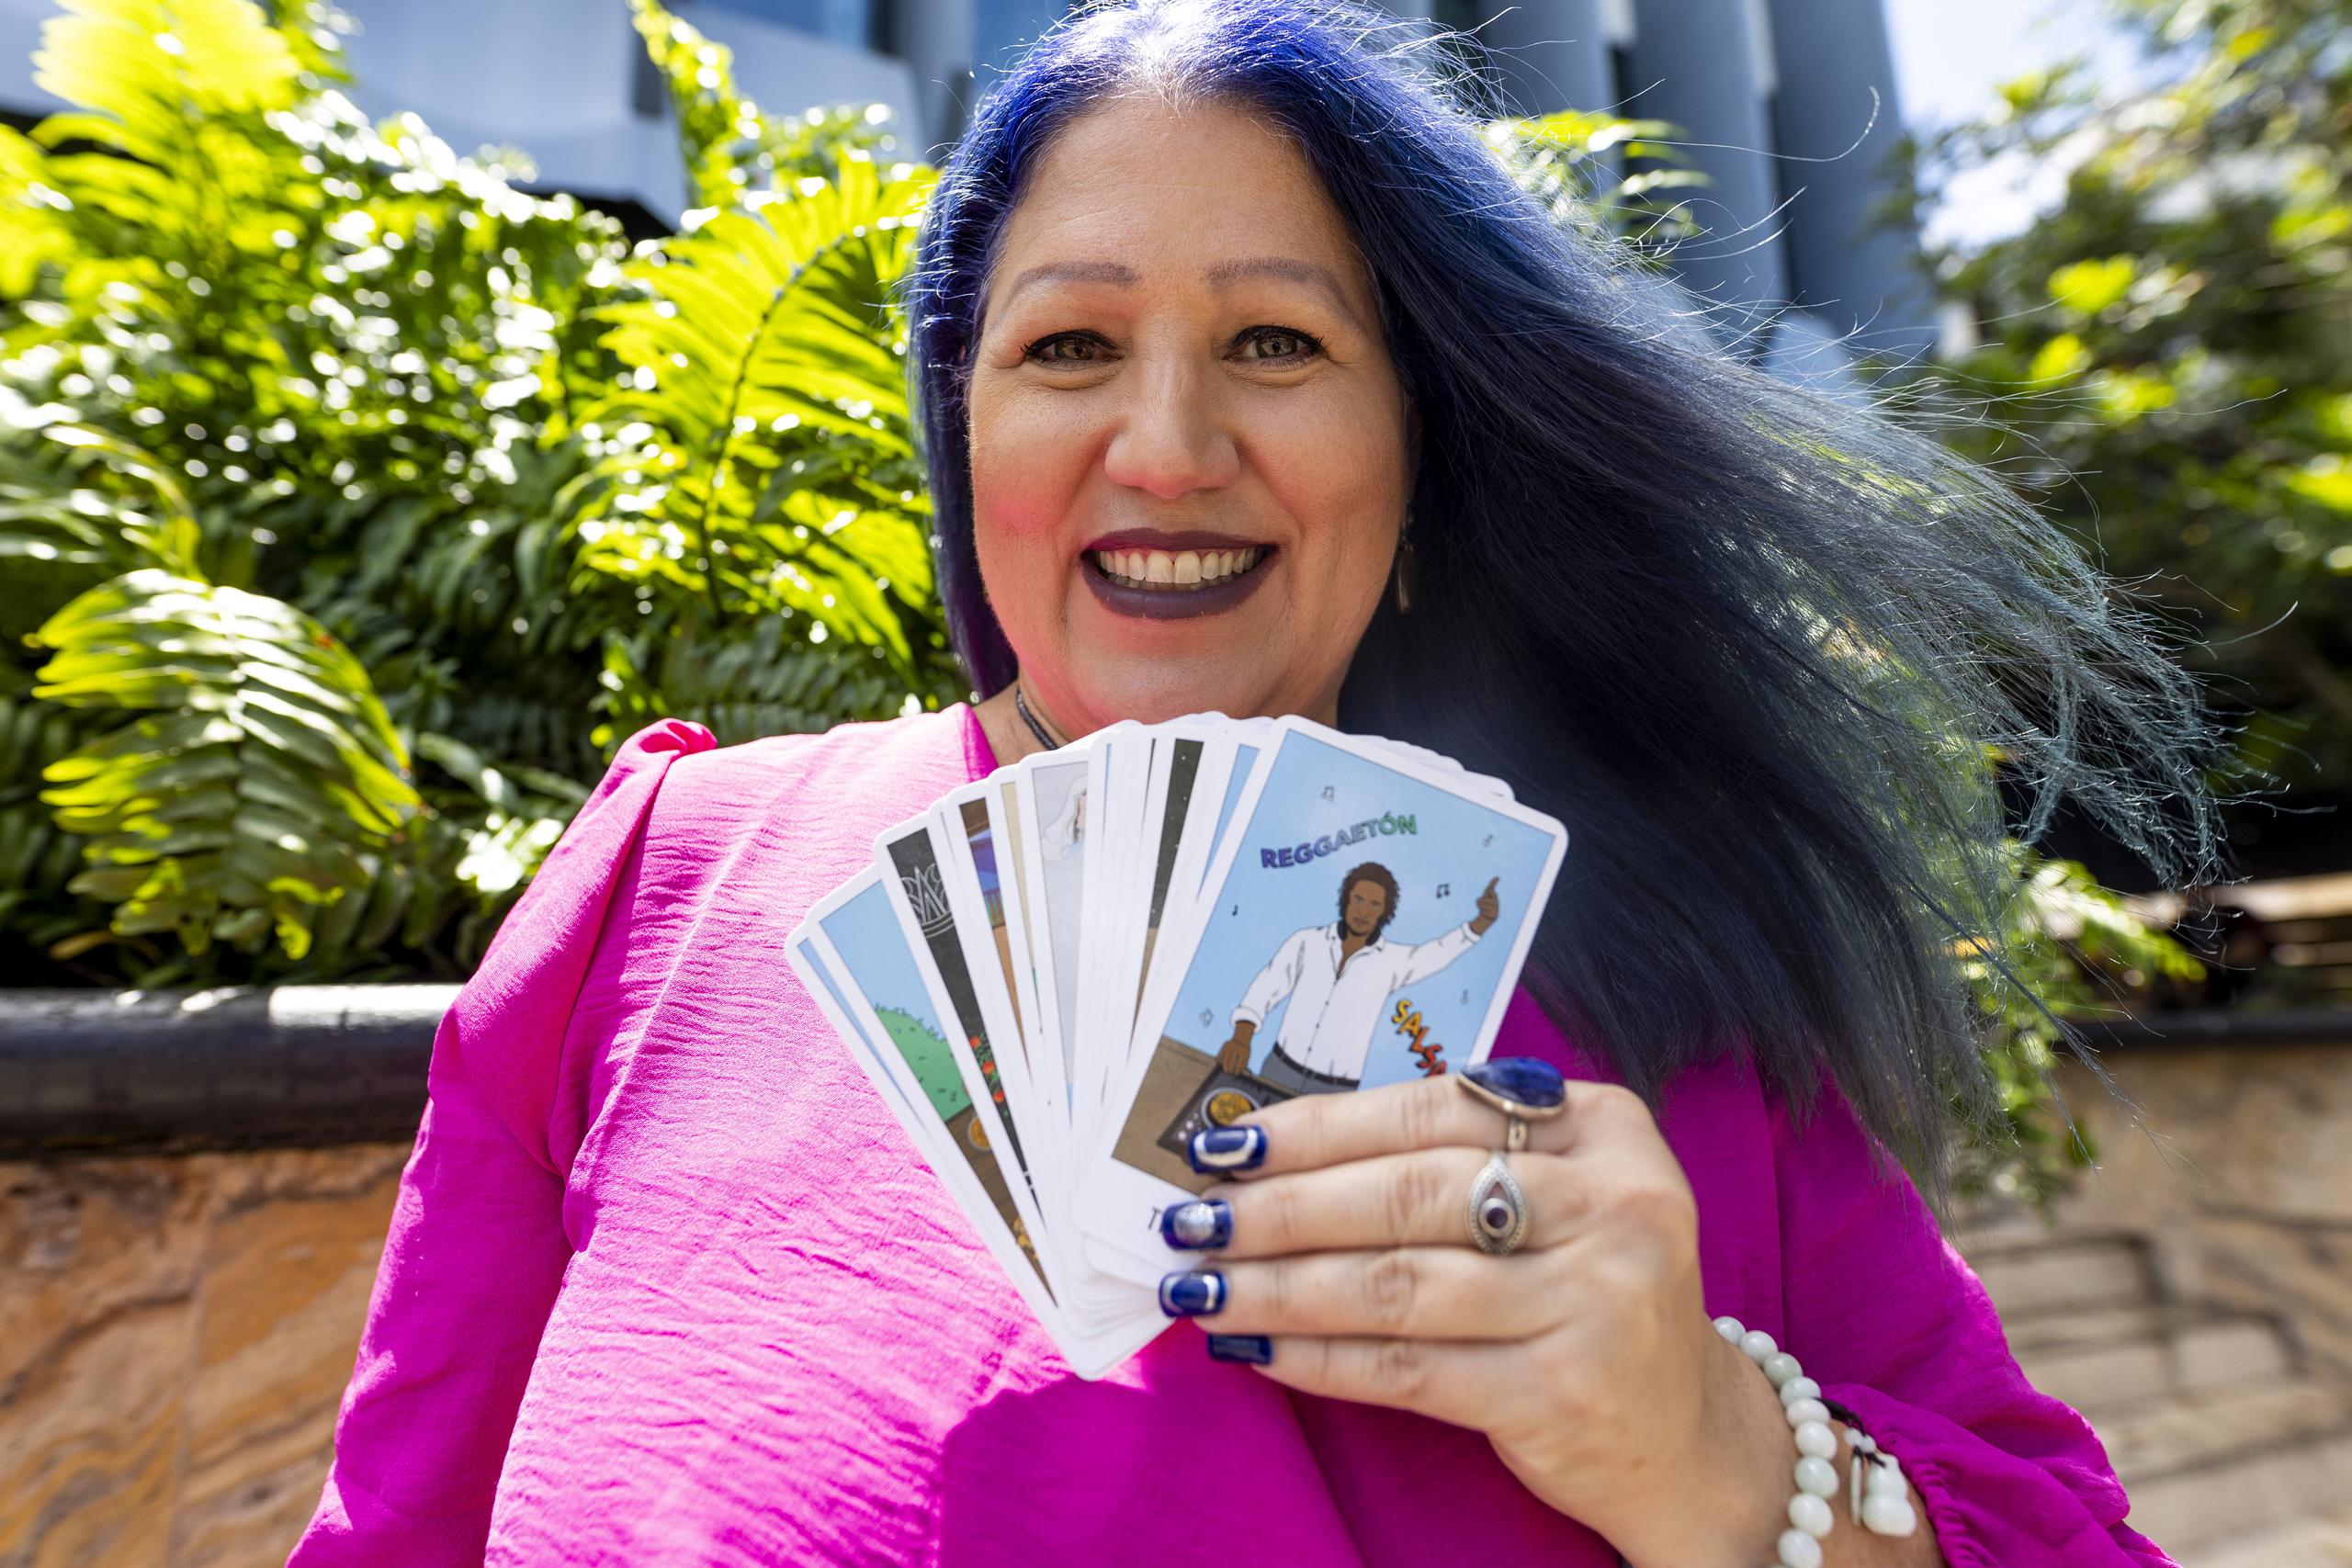 La autora y creadora de “Secrets of Paradise Tarot” invitó al Primer Festival del Tarot, que llevará a cabo el 4 de mayo en Centro Raíces, en Toa Baja.